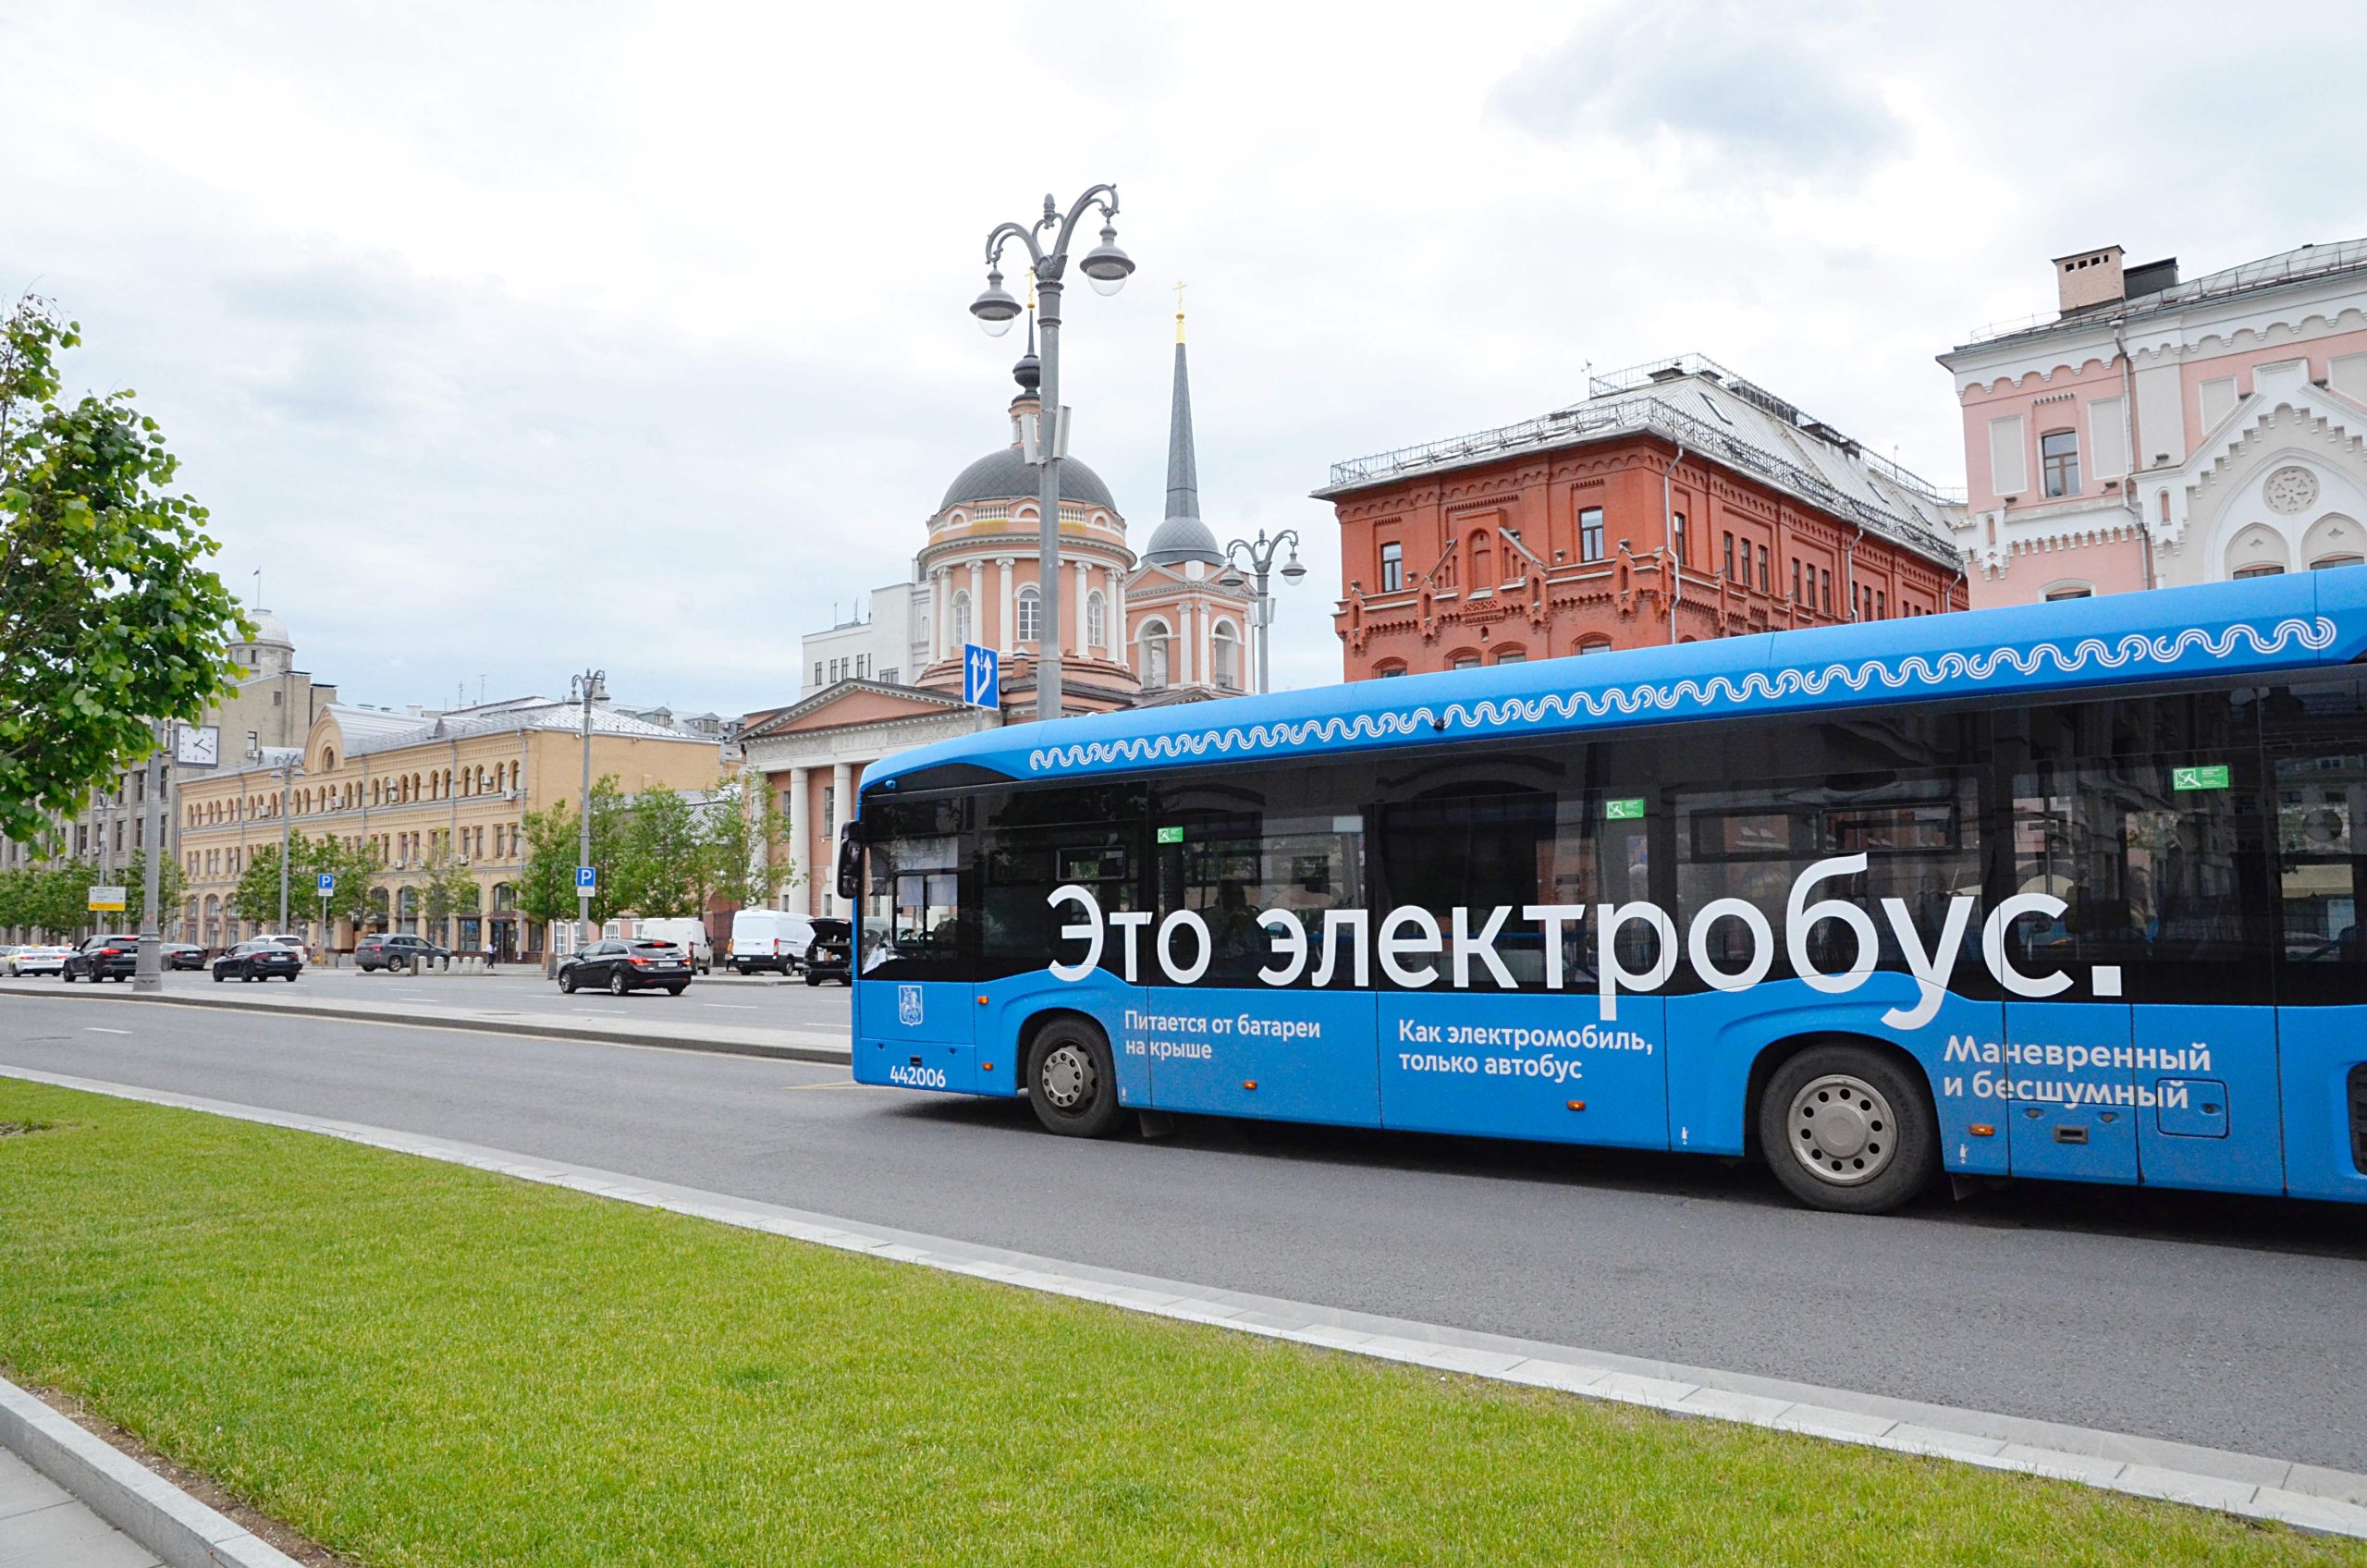 Выбросы углекислого газа в Москве сократились на 130 тысяч тонн благодаря электробусам. Фото: Анна Быкова, «Вечерняя Москва»